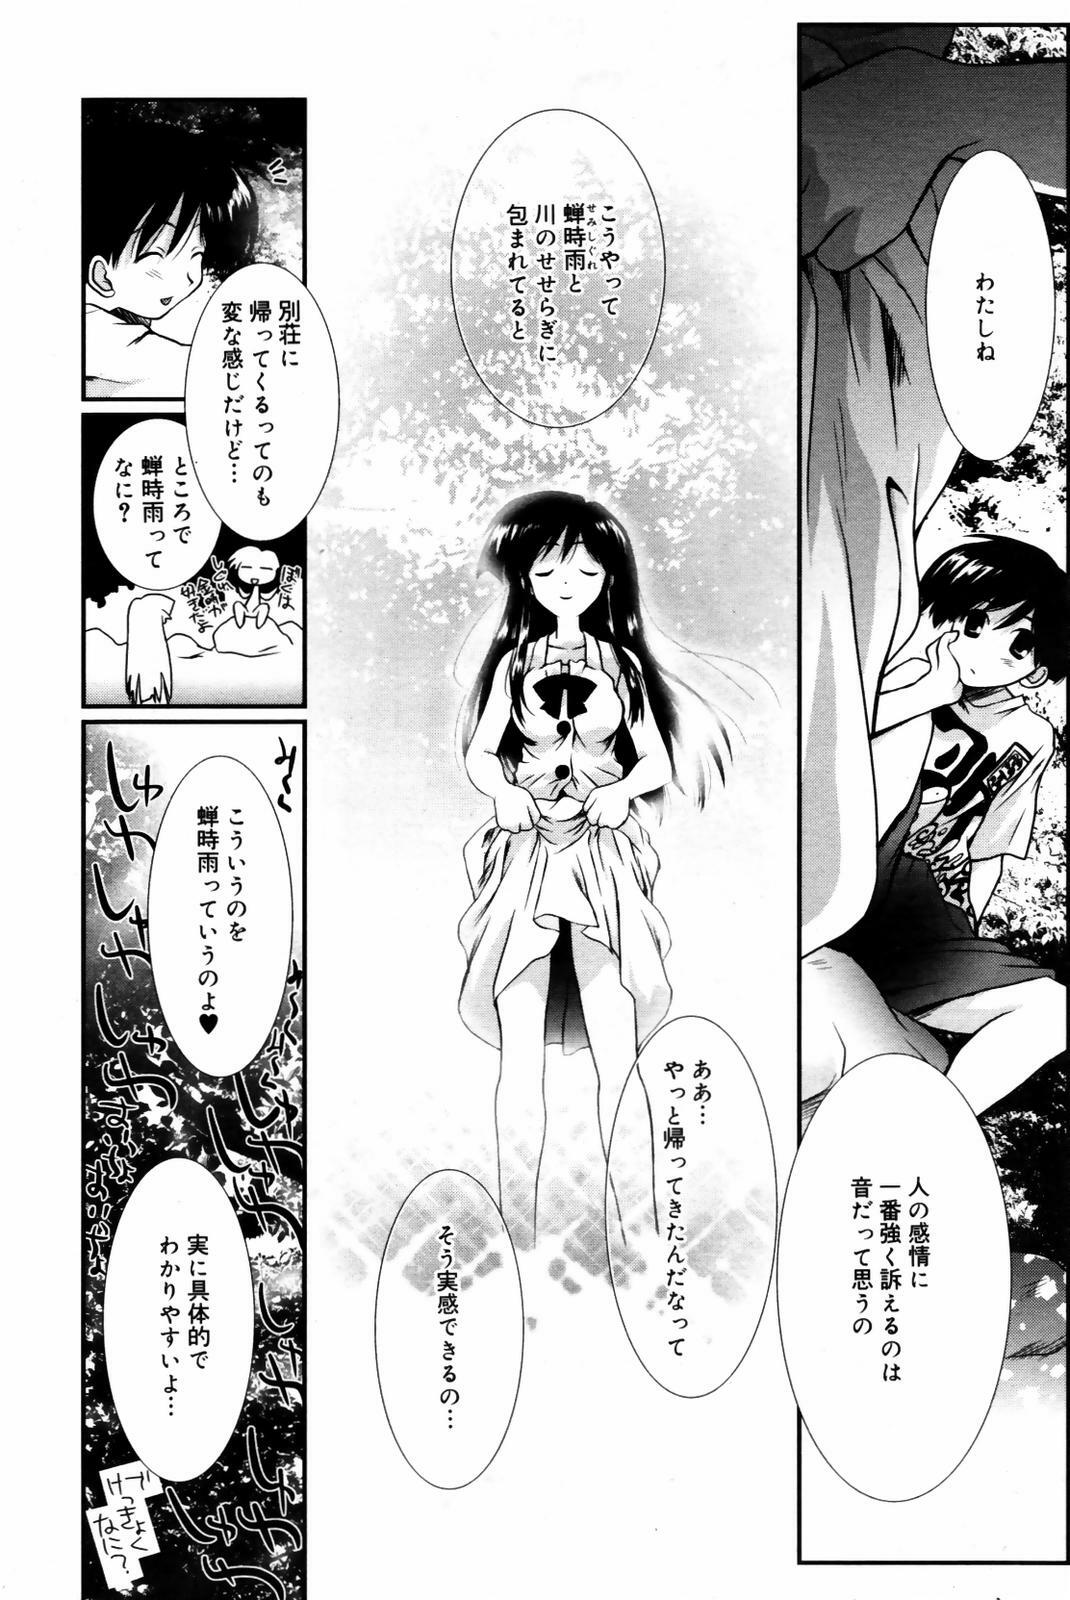 Manga Bangaichi 2007-09 page 42 full